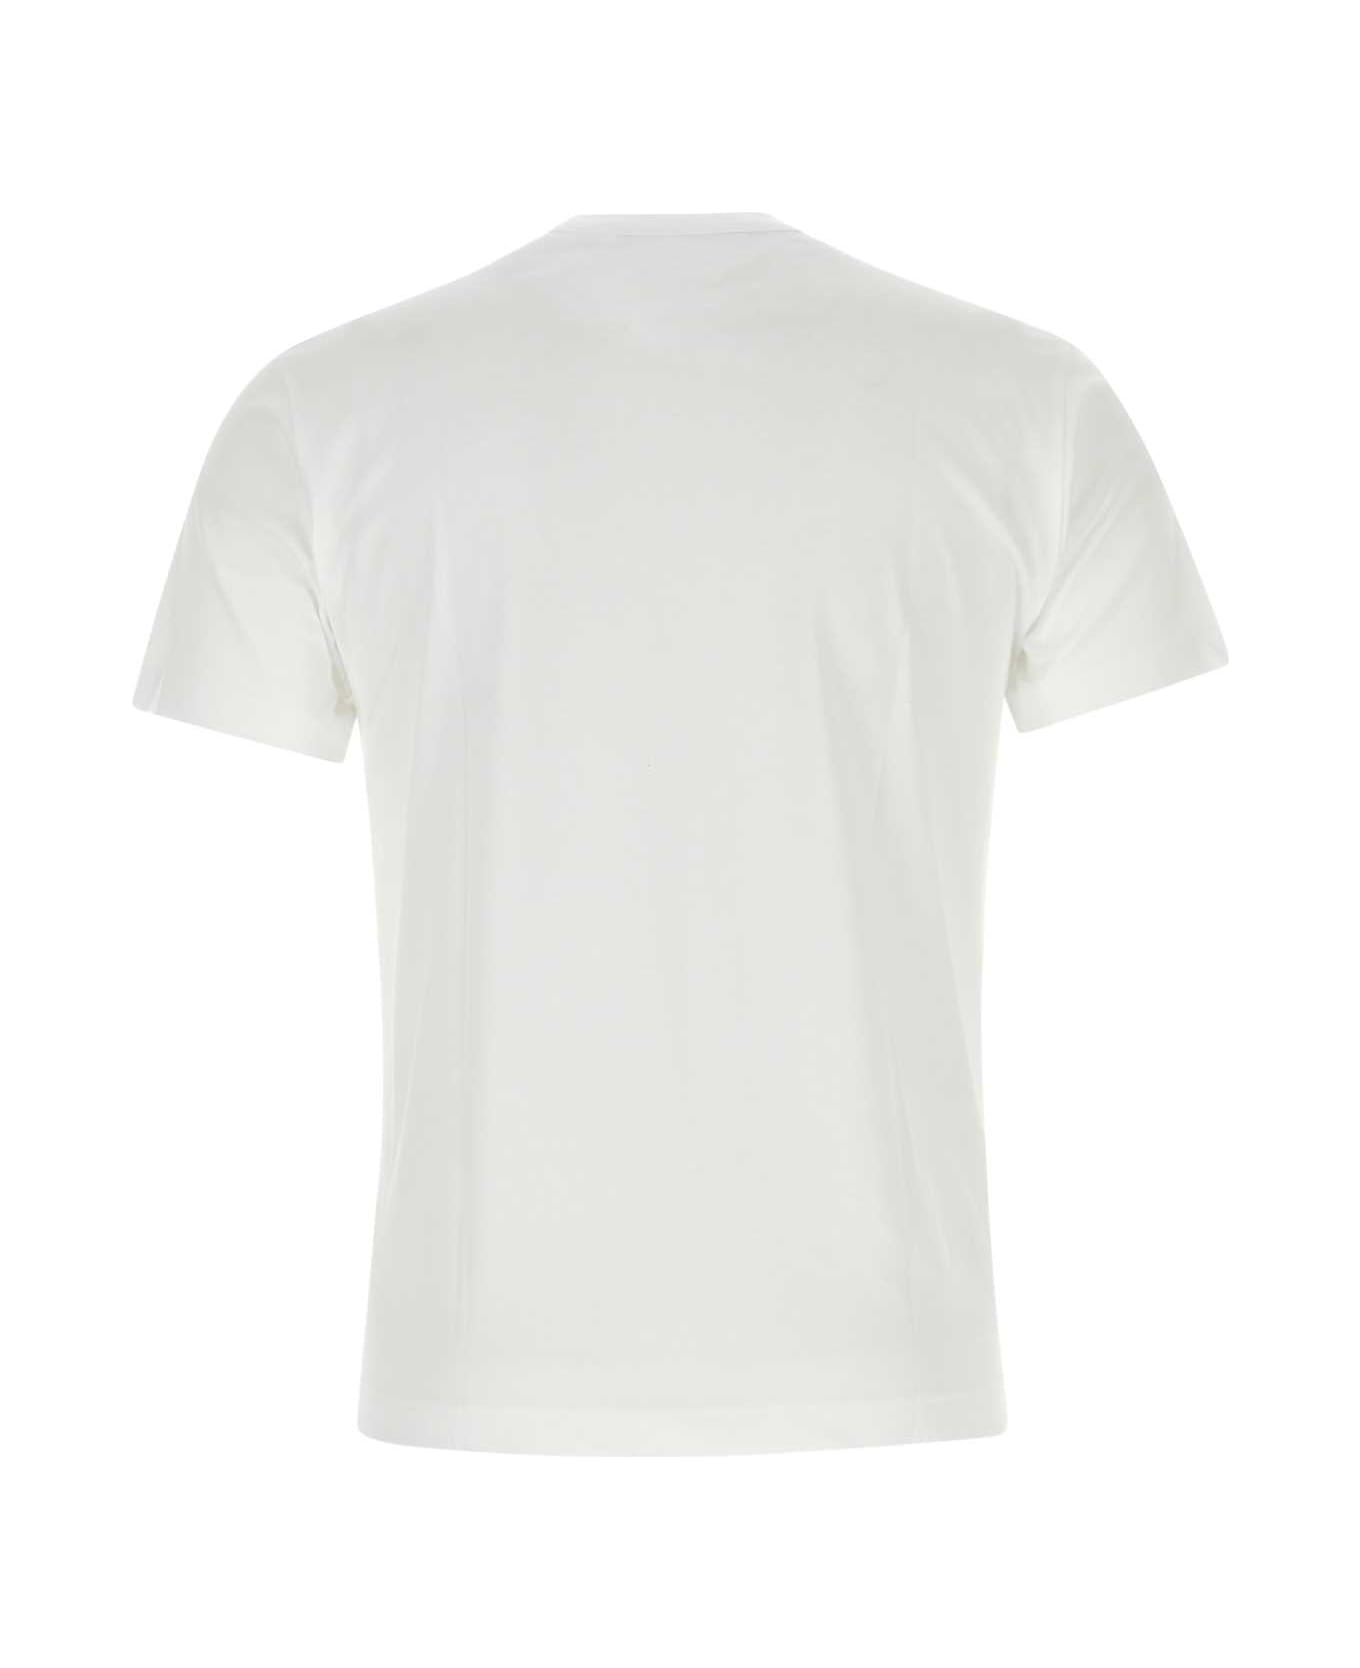 Comme des Garçons White Cotton T-shirt - WHITE シャツ